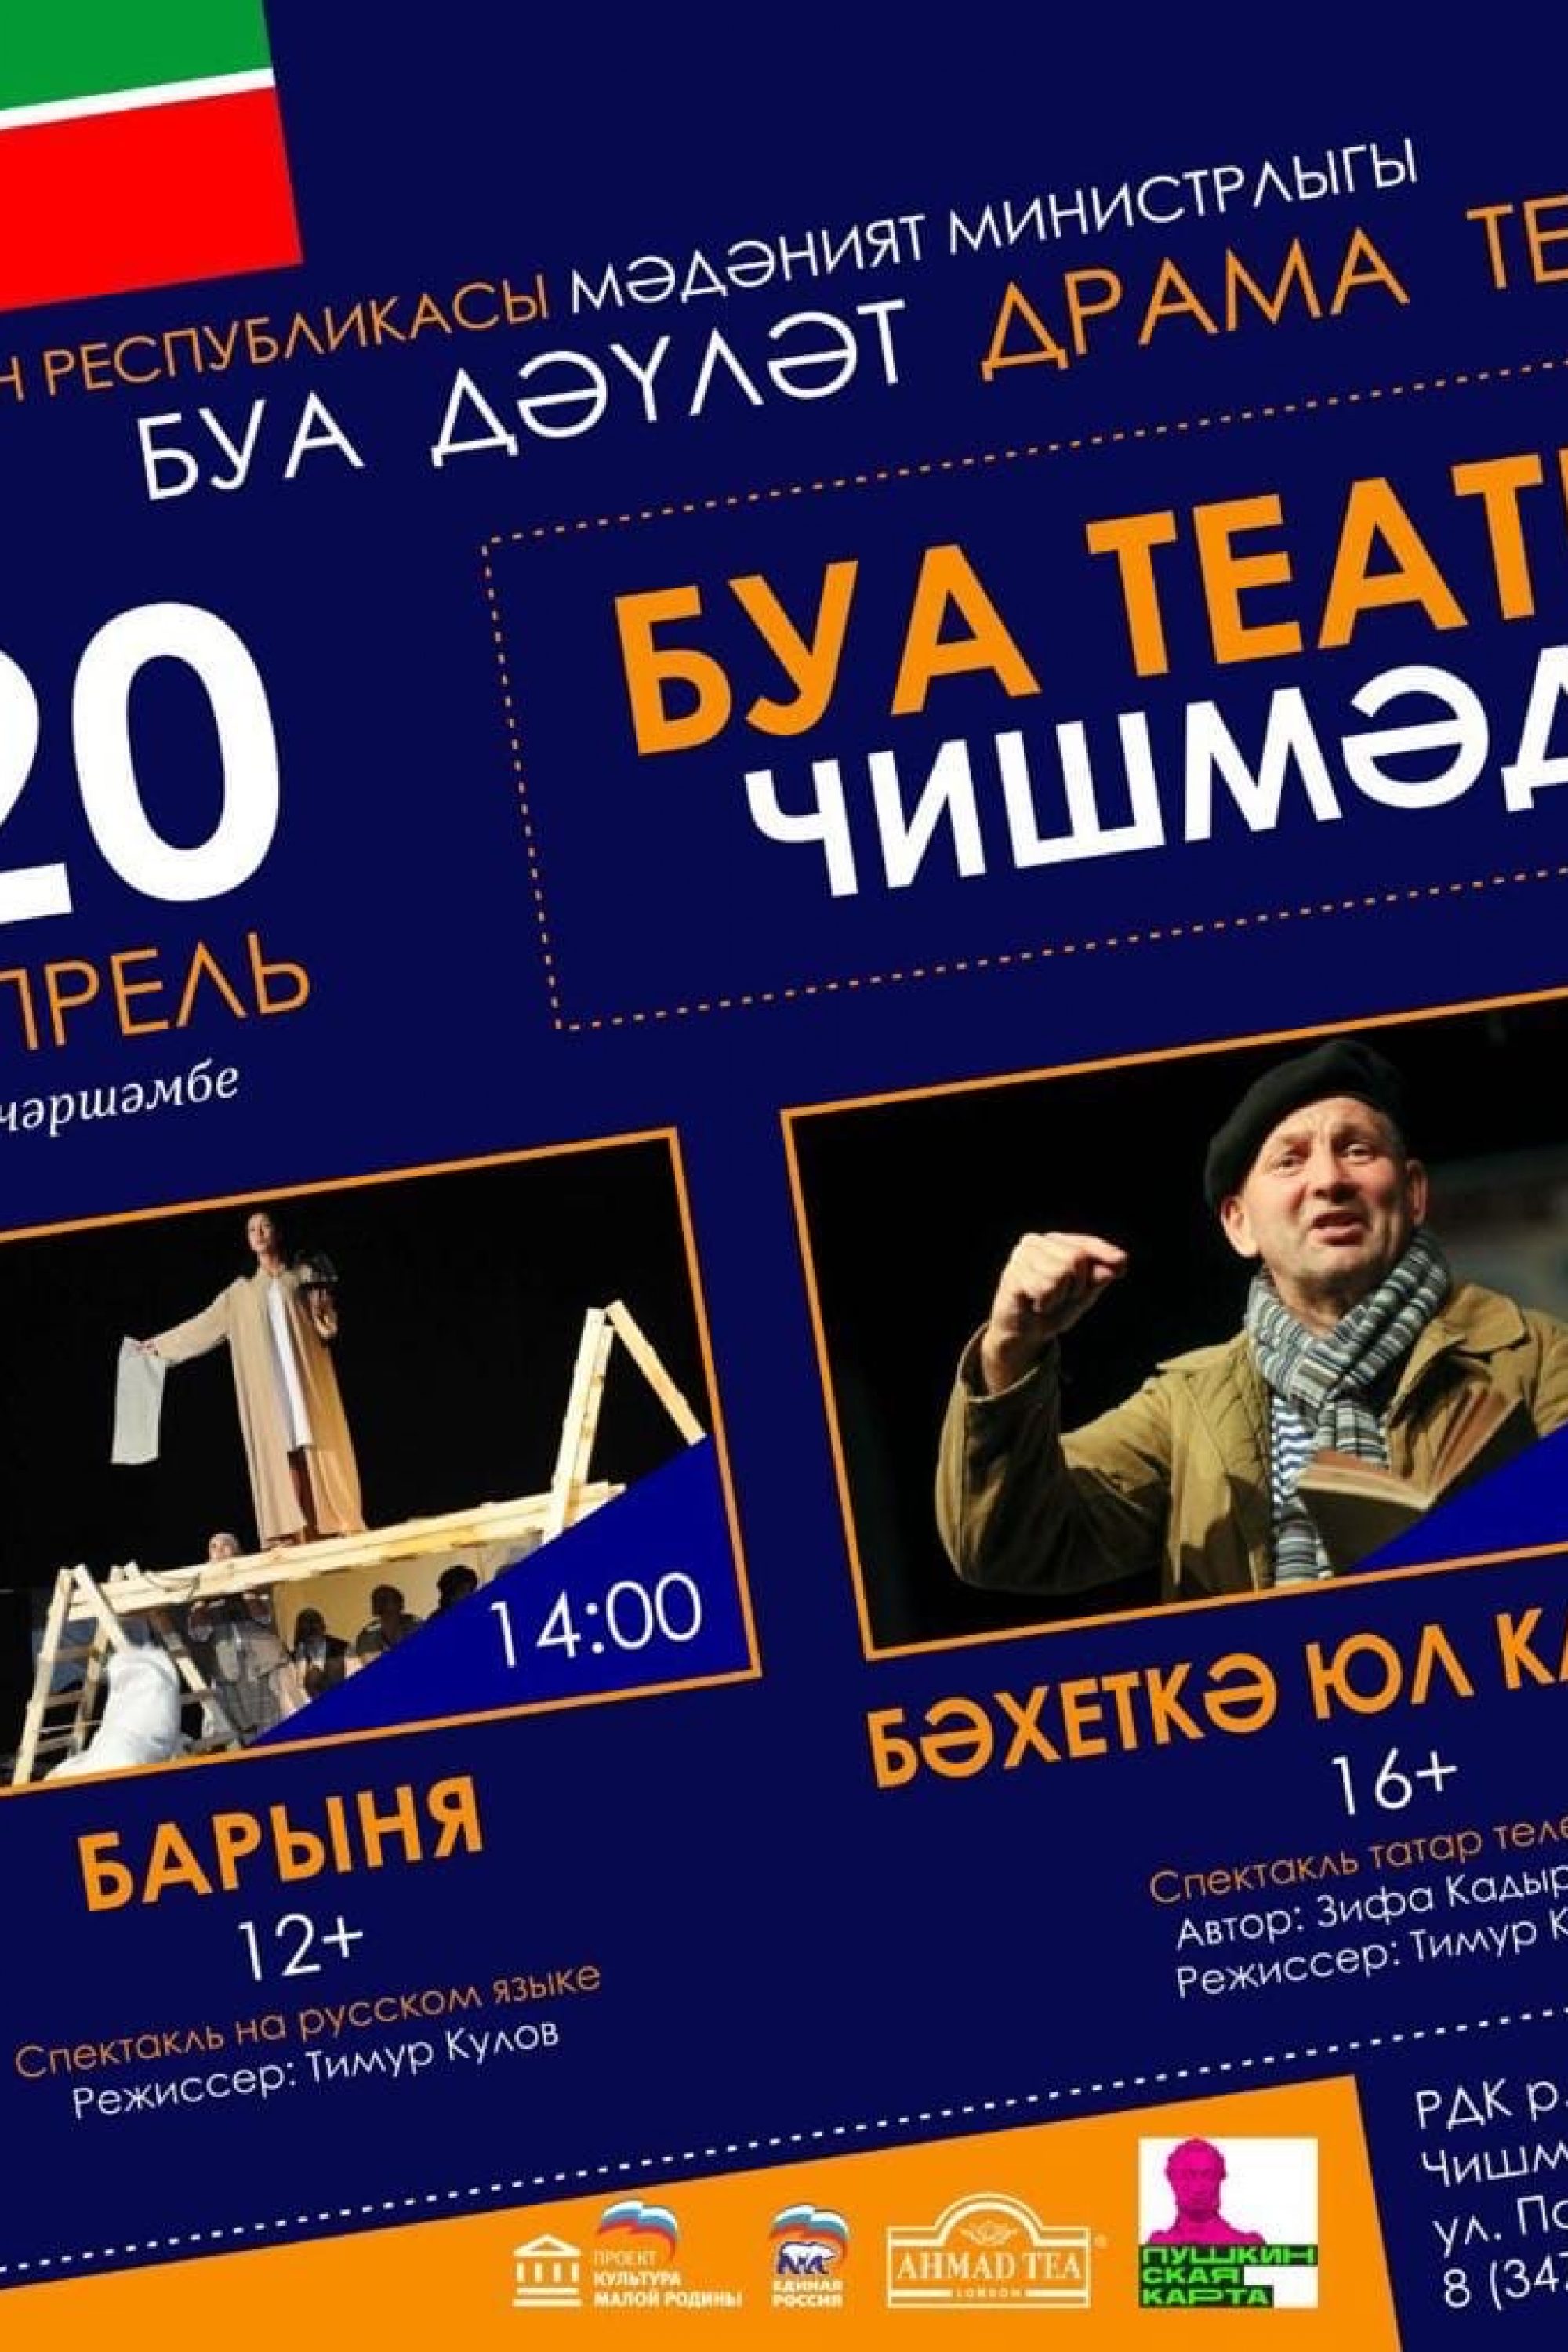 Буинский государственный драмтеатр, 20.04.2022г. в 14:00 и 19:00